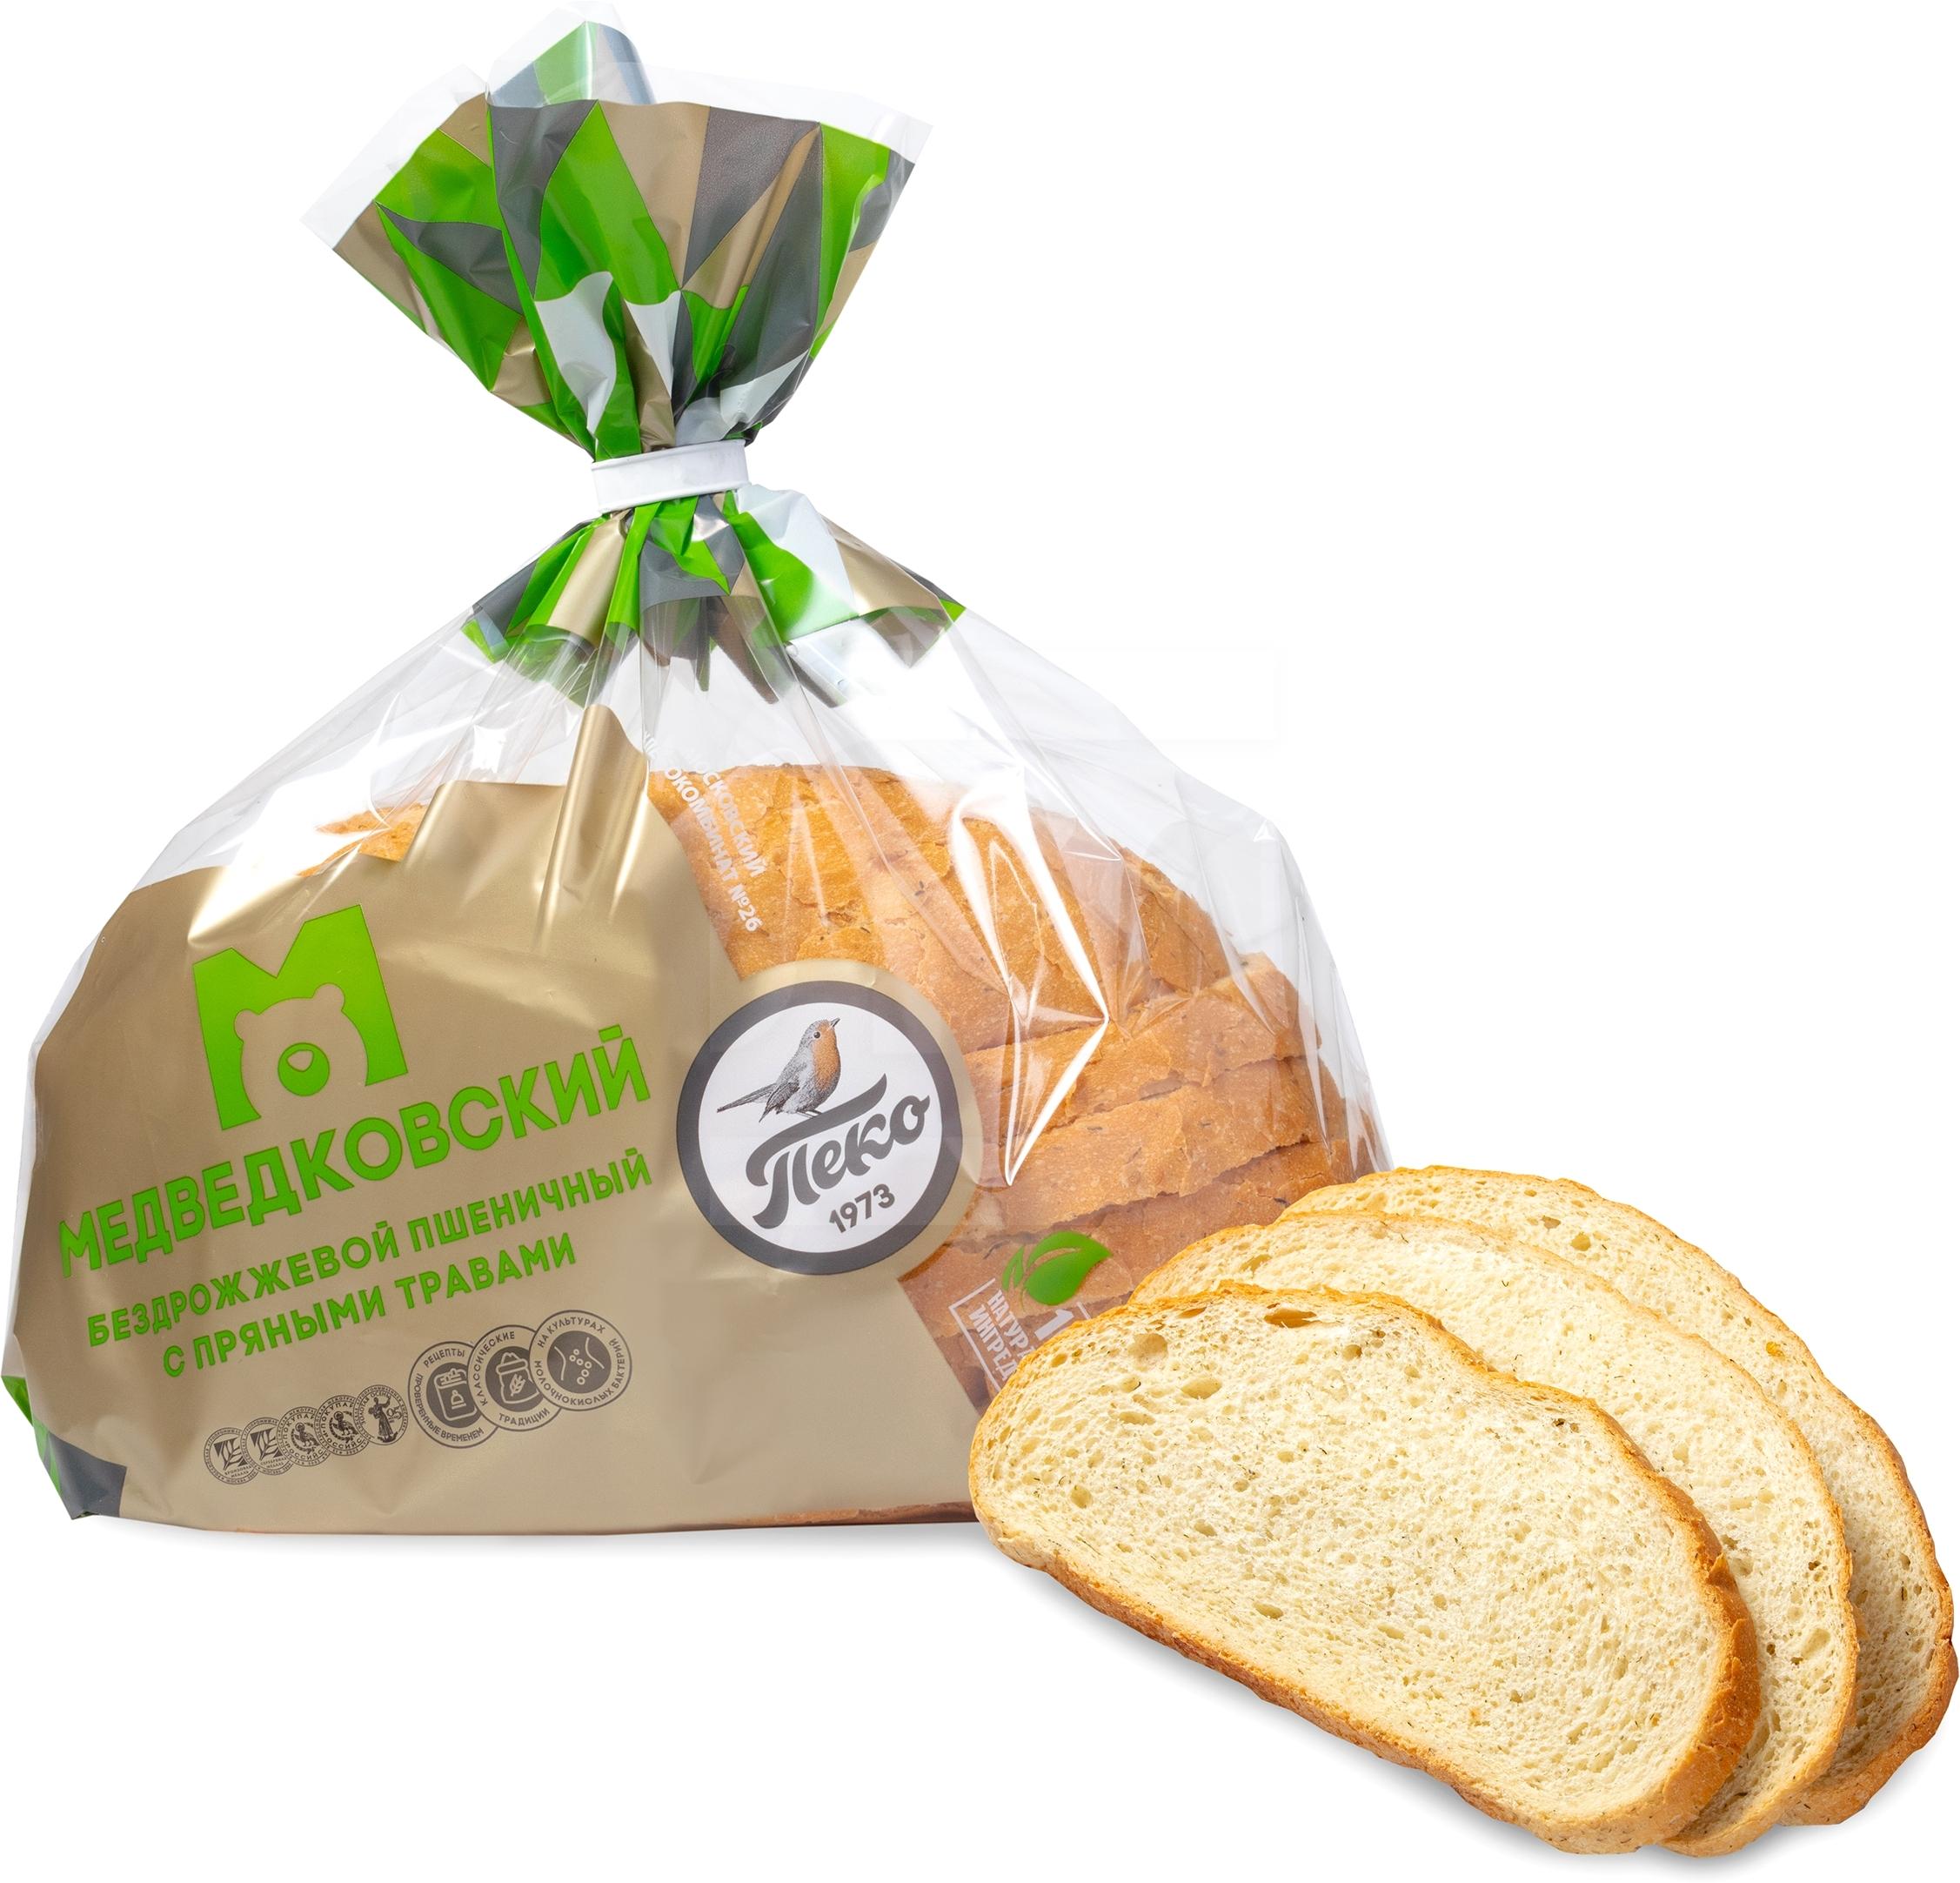 п Хлеб Бездрожжевой пшеничный с пряными травами   Пеко  - интернет-магазин Близнецы